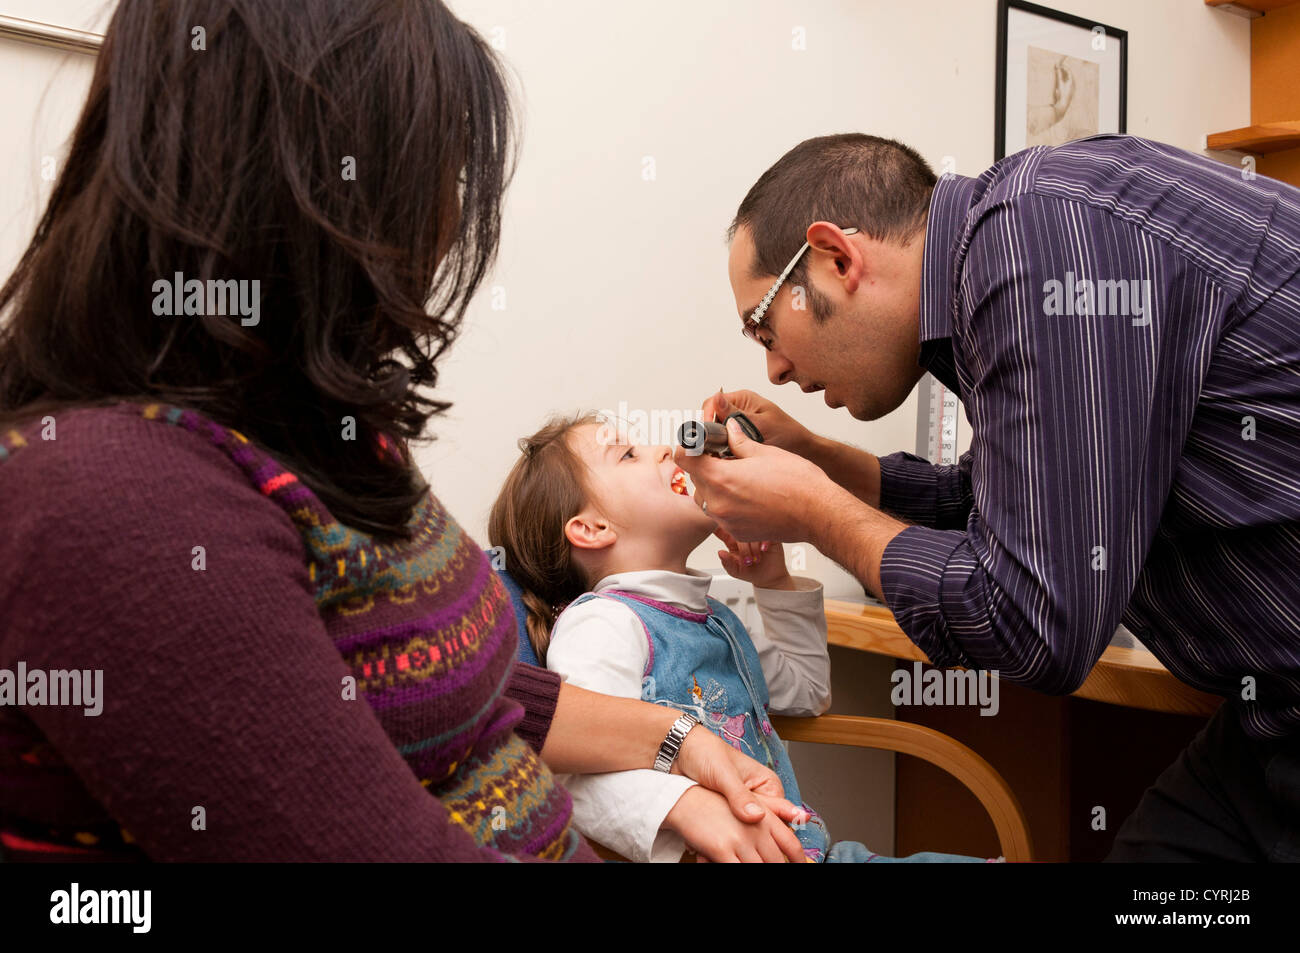 GP-Arzt Chirurgie Patientengespräch. Arzt untersucht Hals eines jungen Kindes, während ihre Mutter Uhren. UK Stockfoto